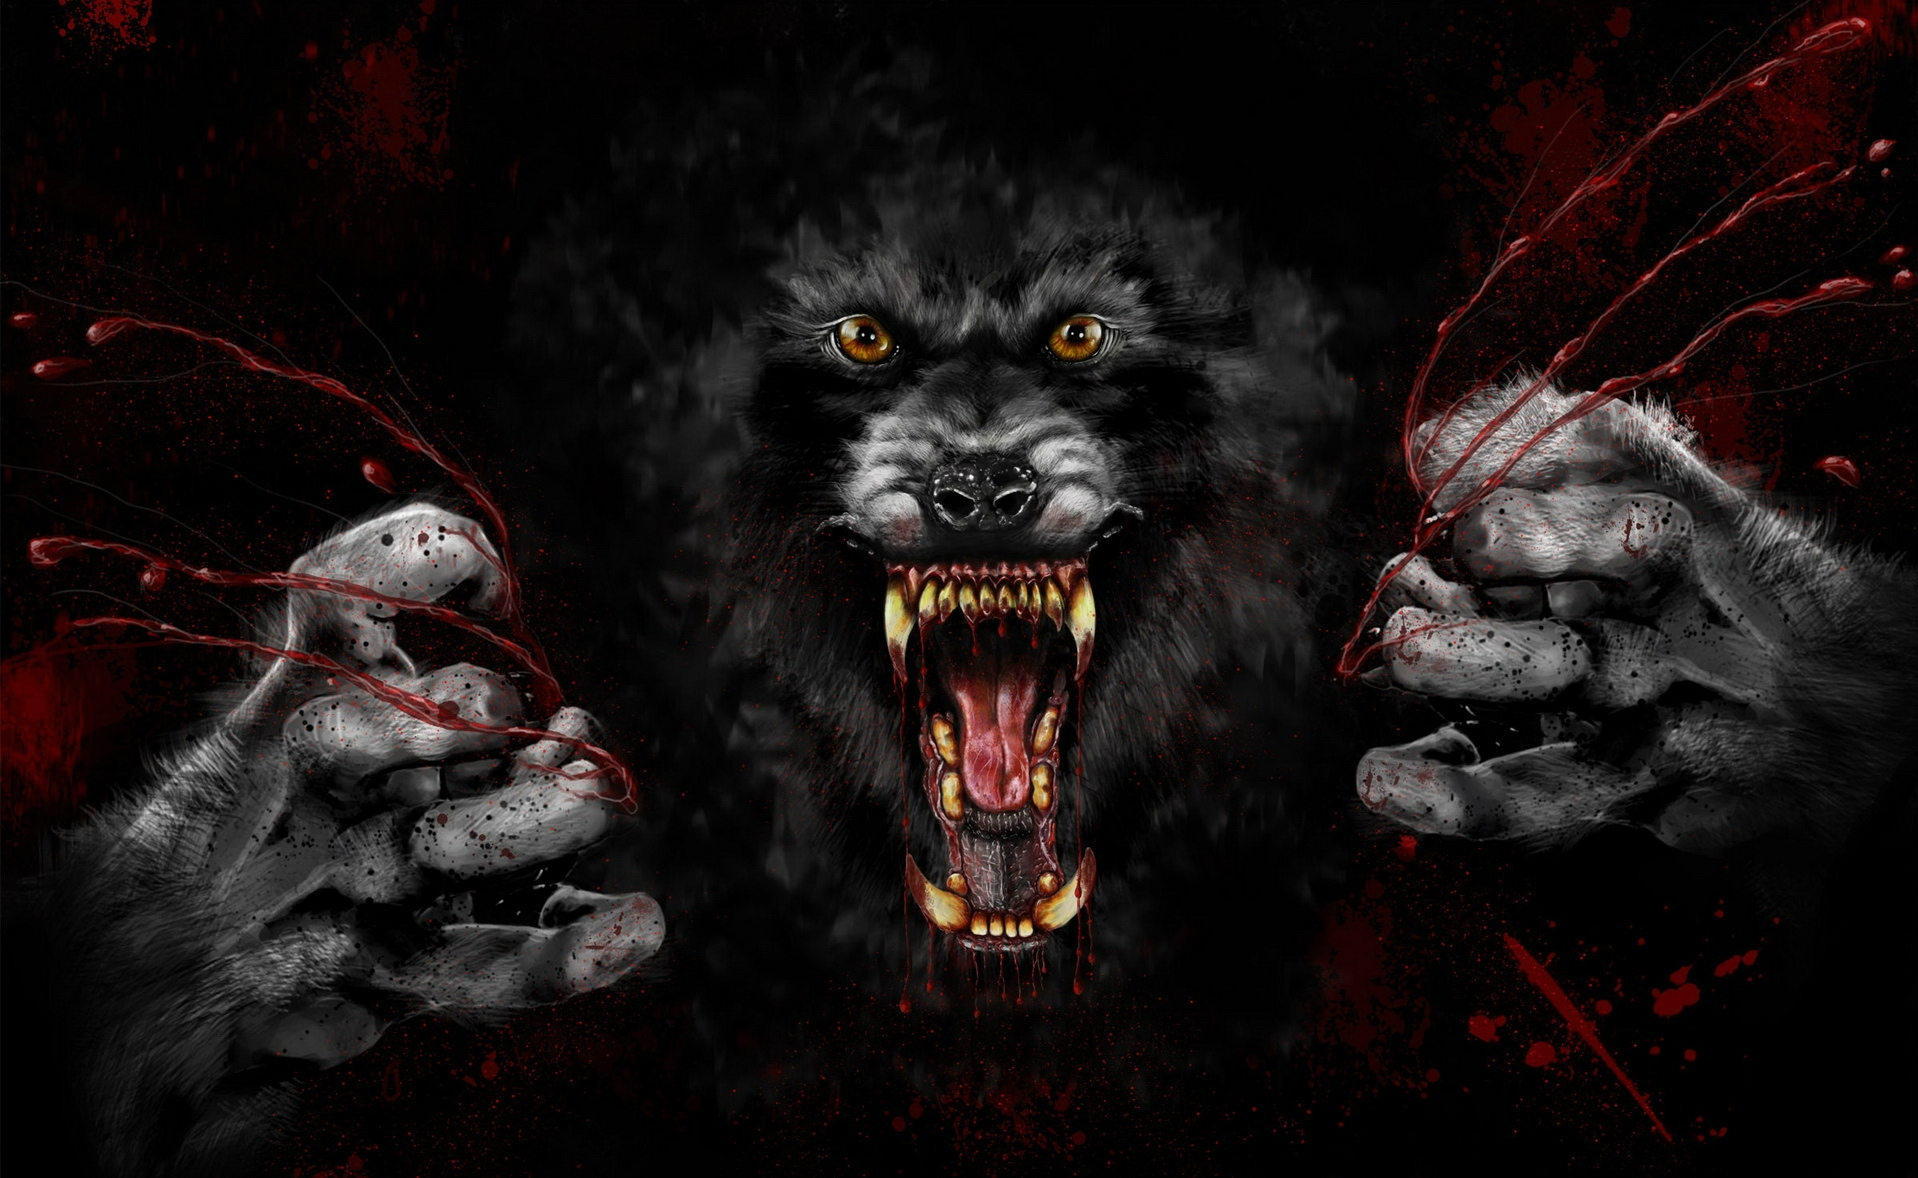 Dark werewolf artwork by Matt Rosiere